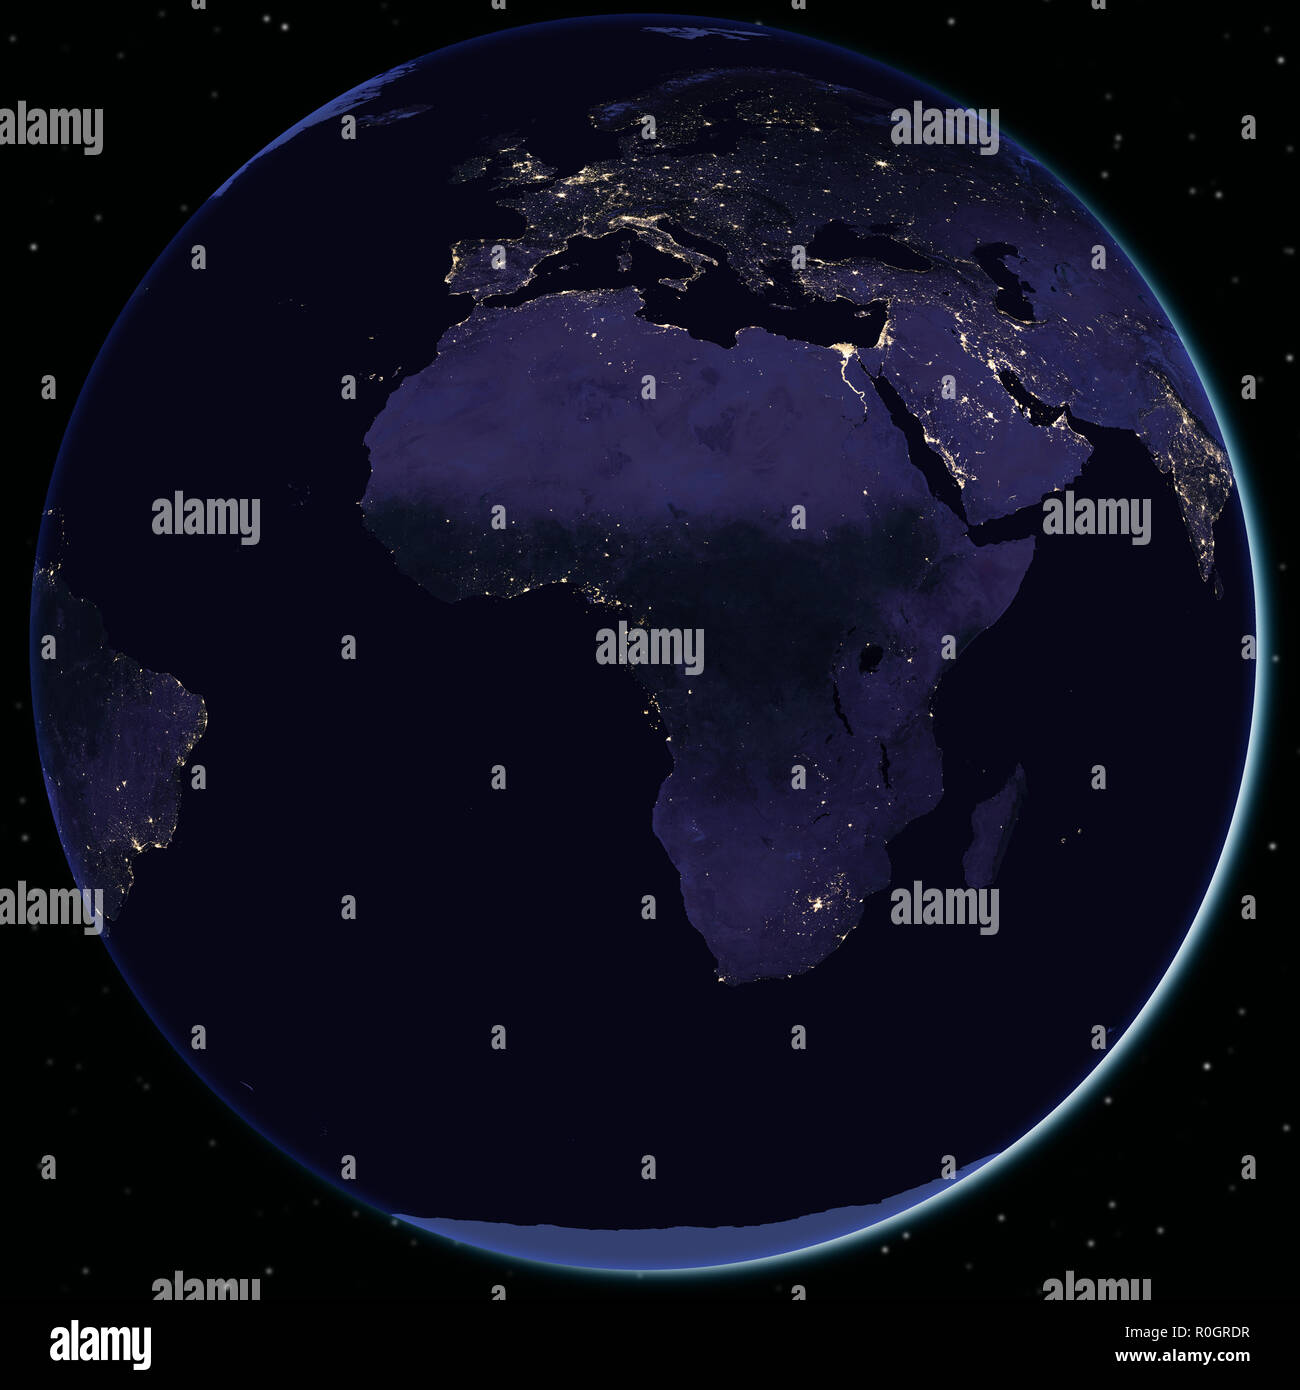 Europa und Afrika bei Nacht vom Weltraum aus gesehen - Elemente dieses Bild von der Nasa eingerichtet Stockfoto